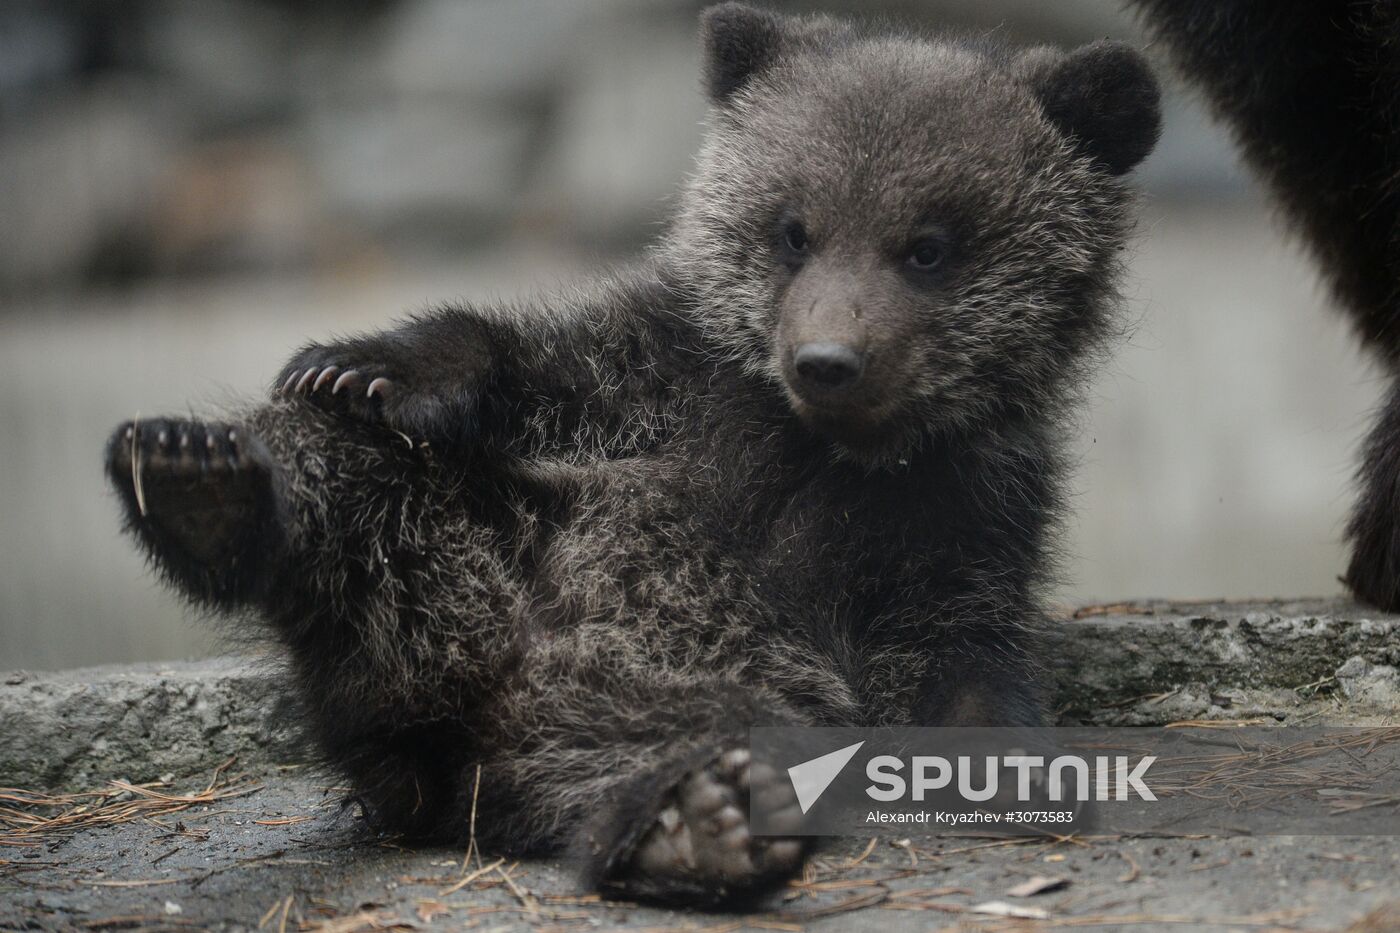 New arrivals at Novosibirsk Zoo